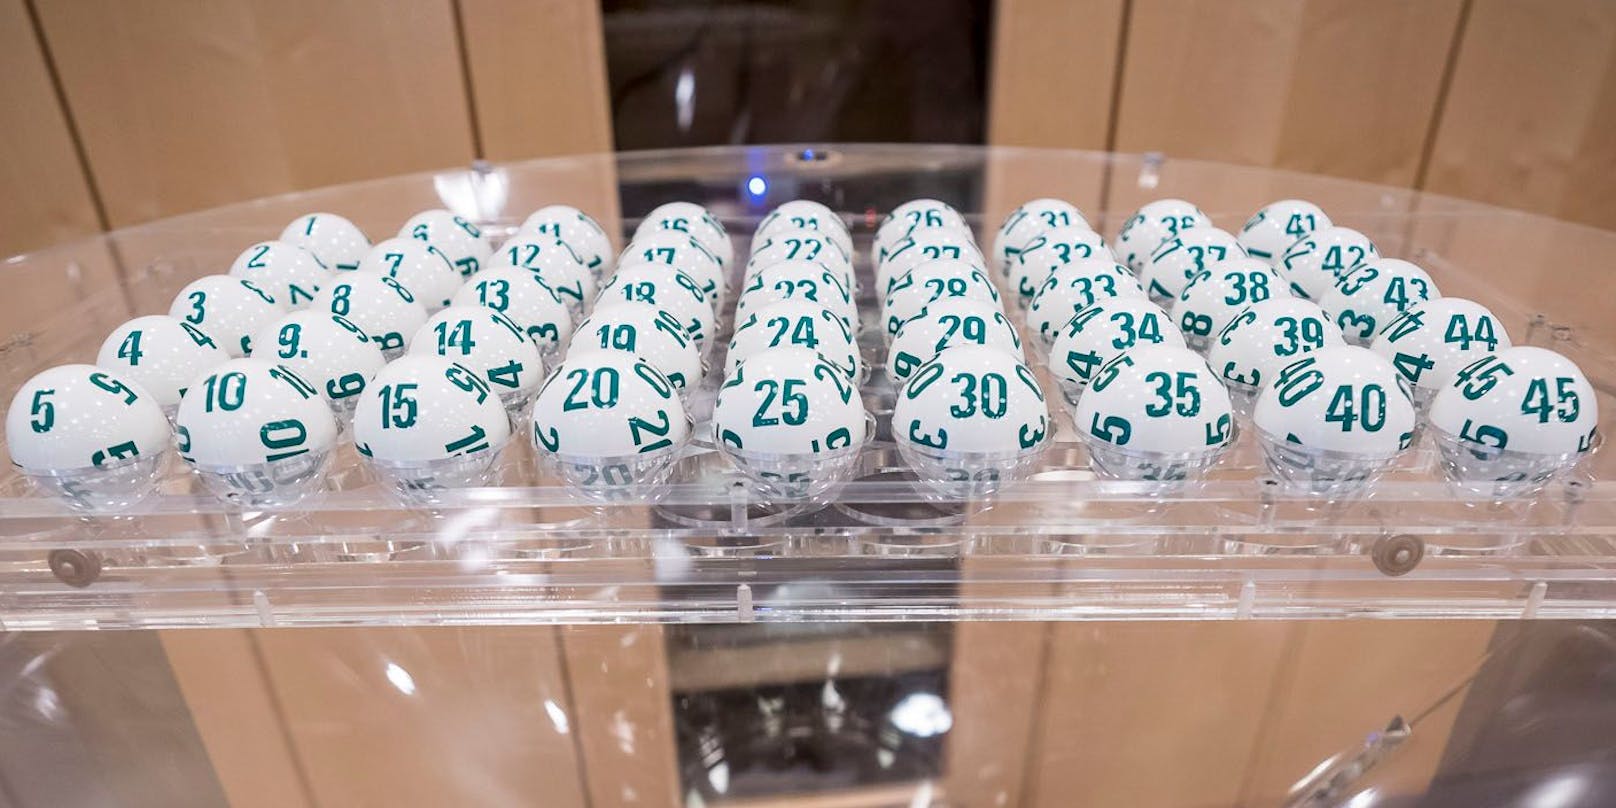 Bei Lotto "6 aus 45" gab es am Sonntag wieder einen Jackpot.